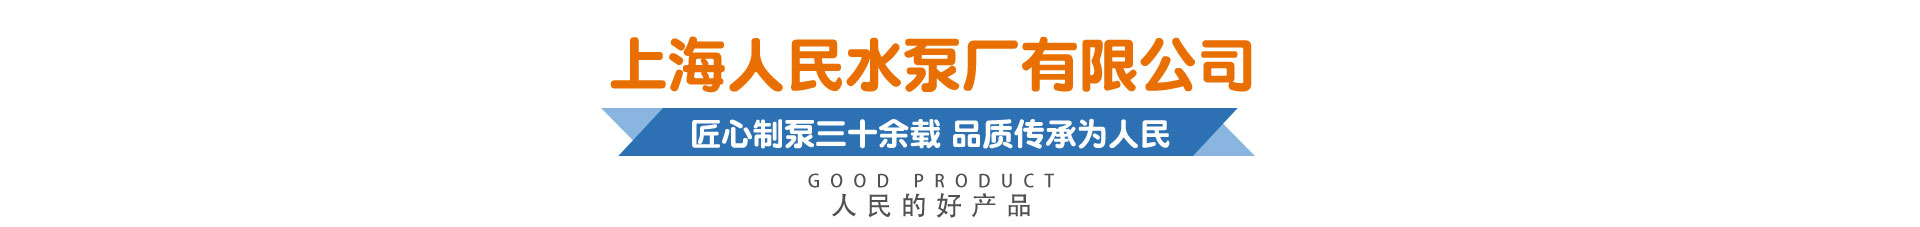 上海人民水泵廠有限公司，匠心制泵三十余載 品質傳承為人民